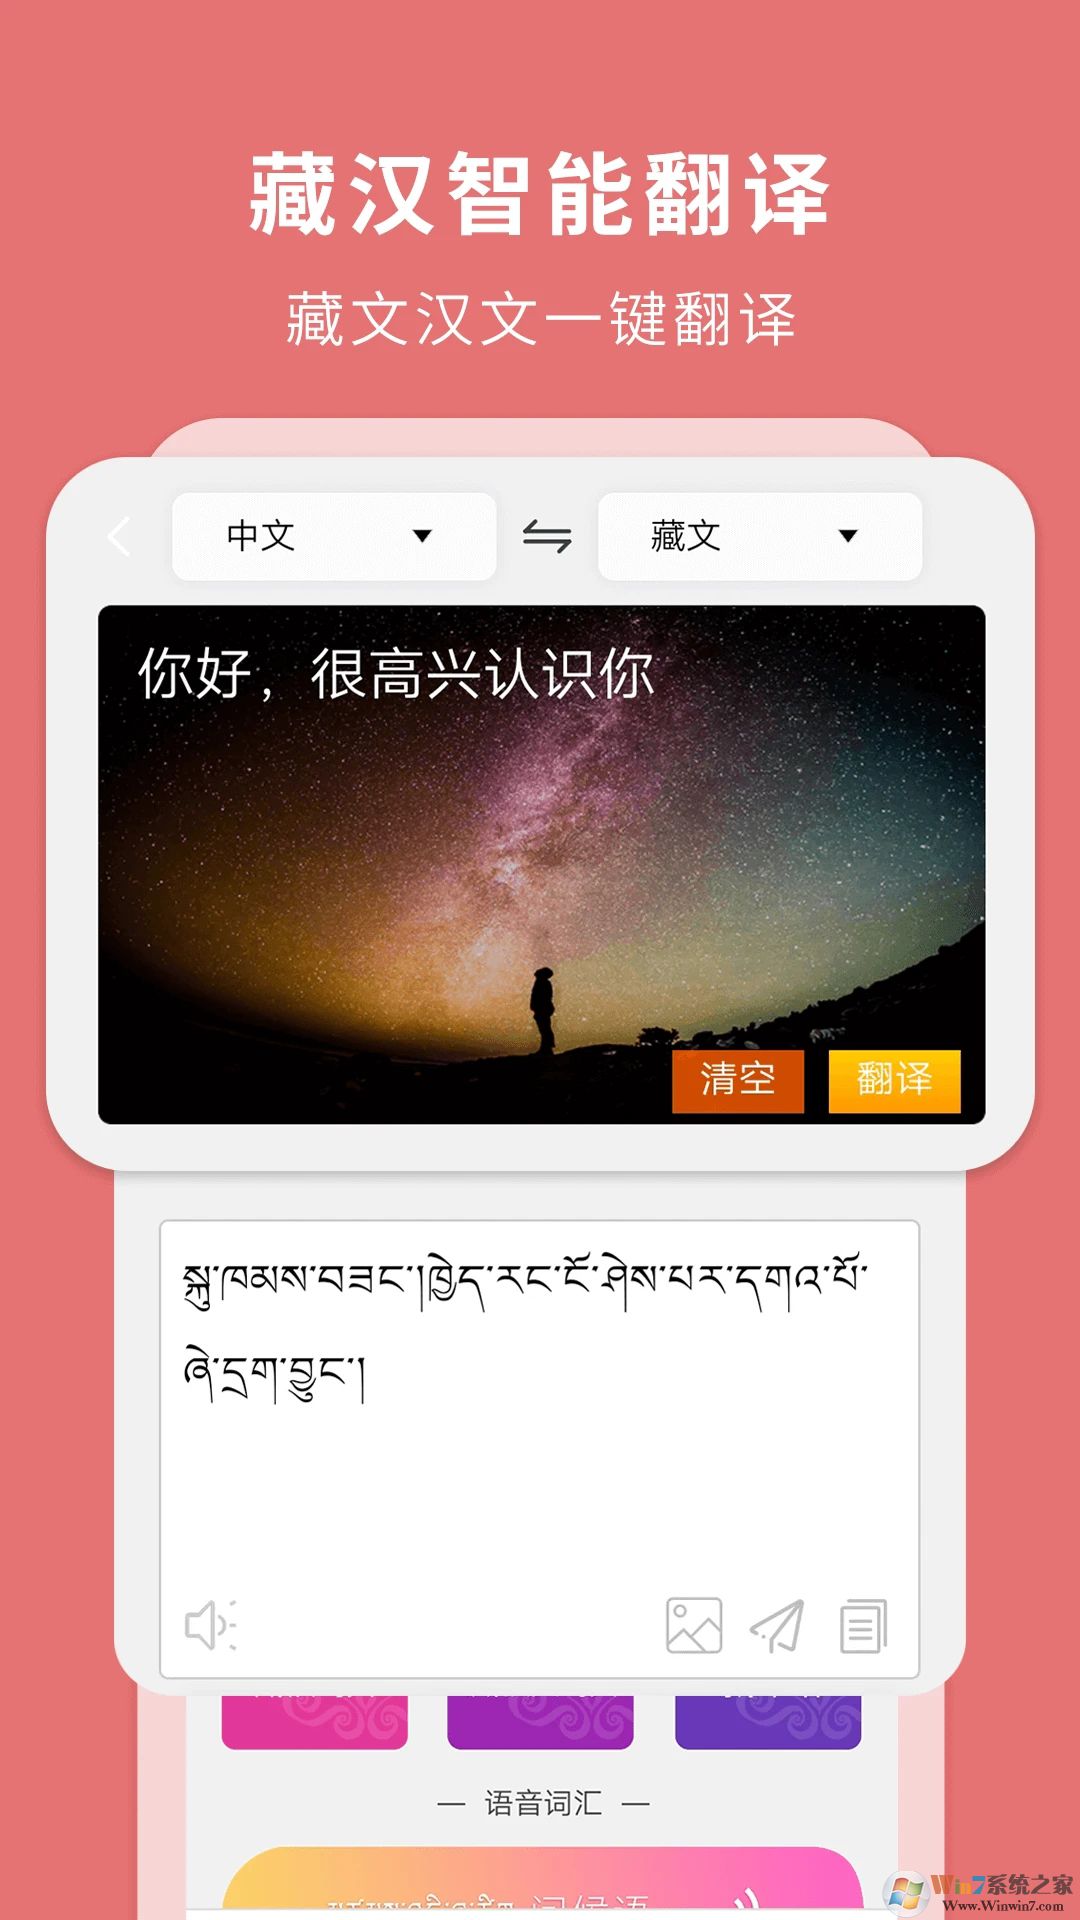 藏汉翻译通翻译软件